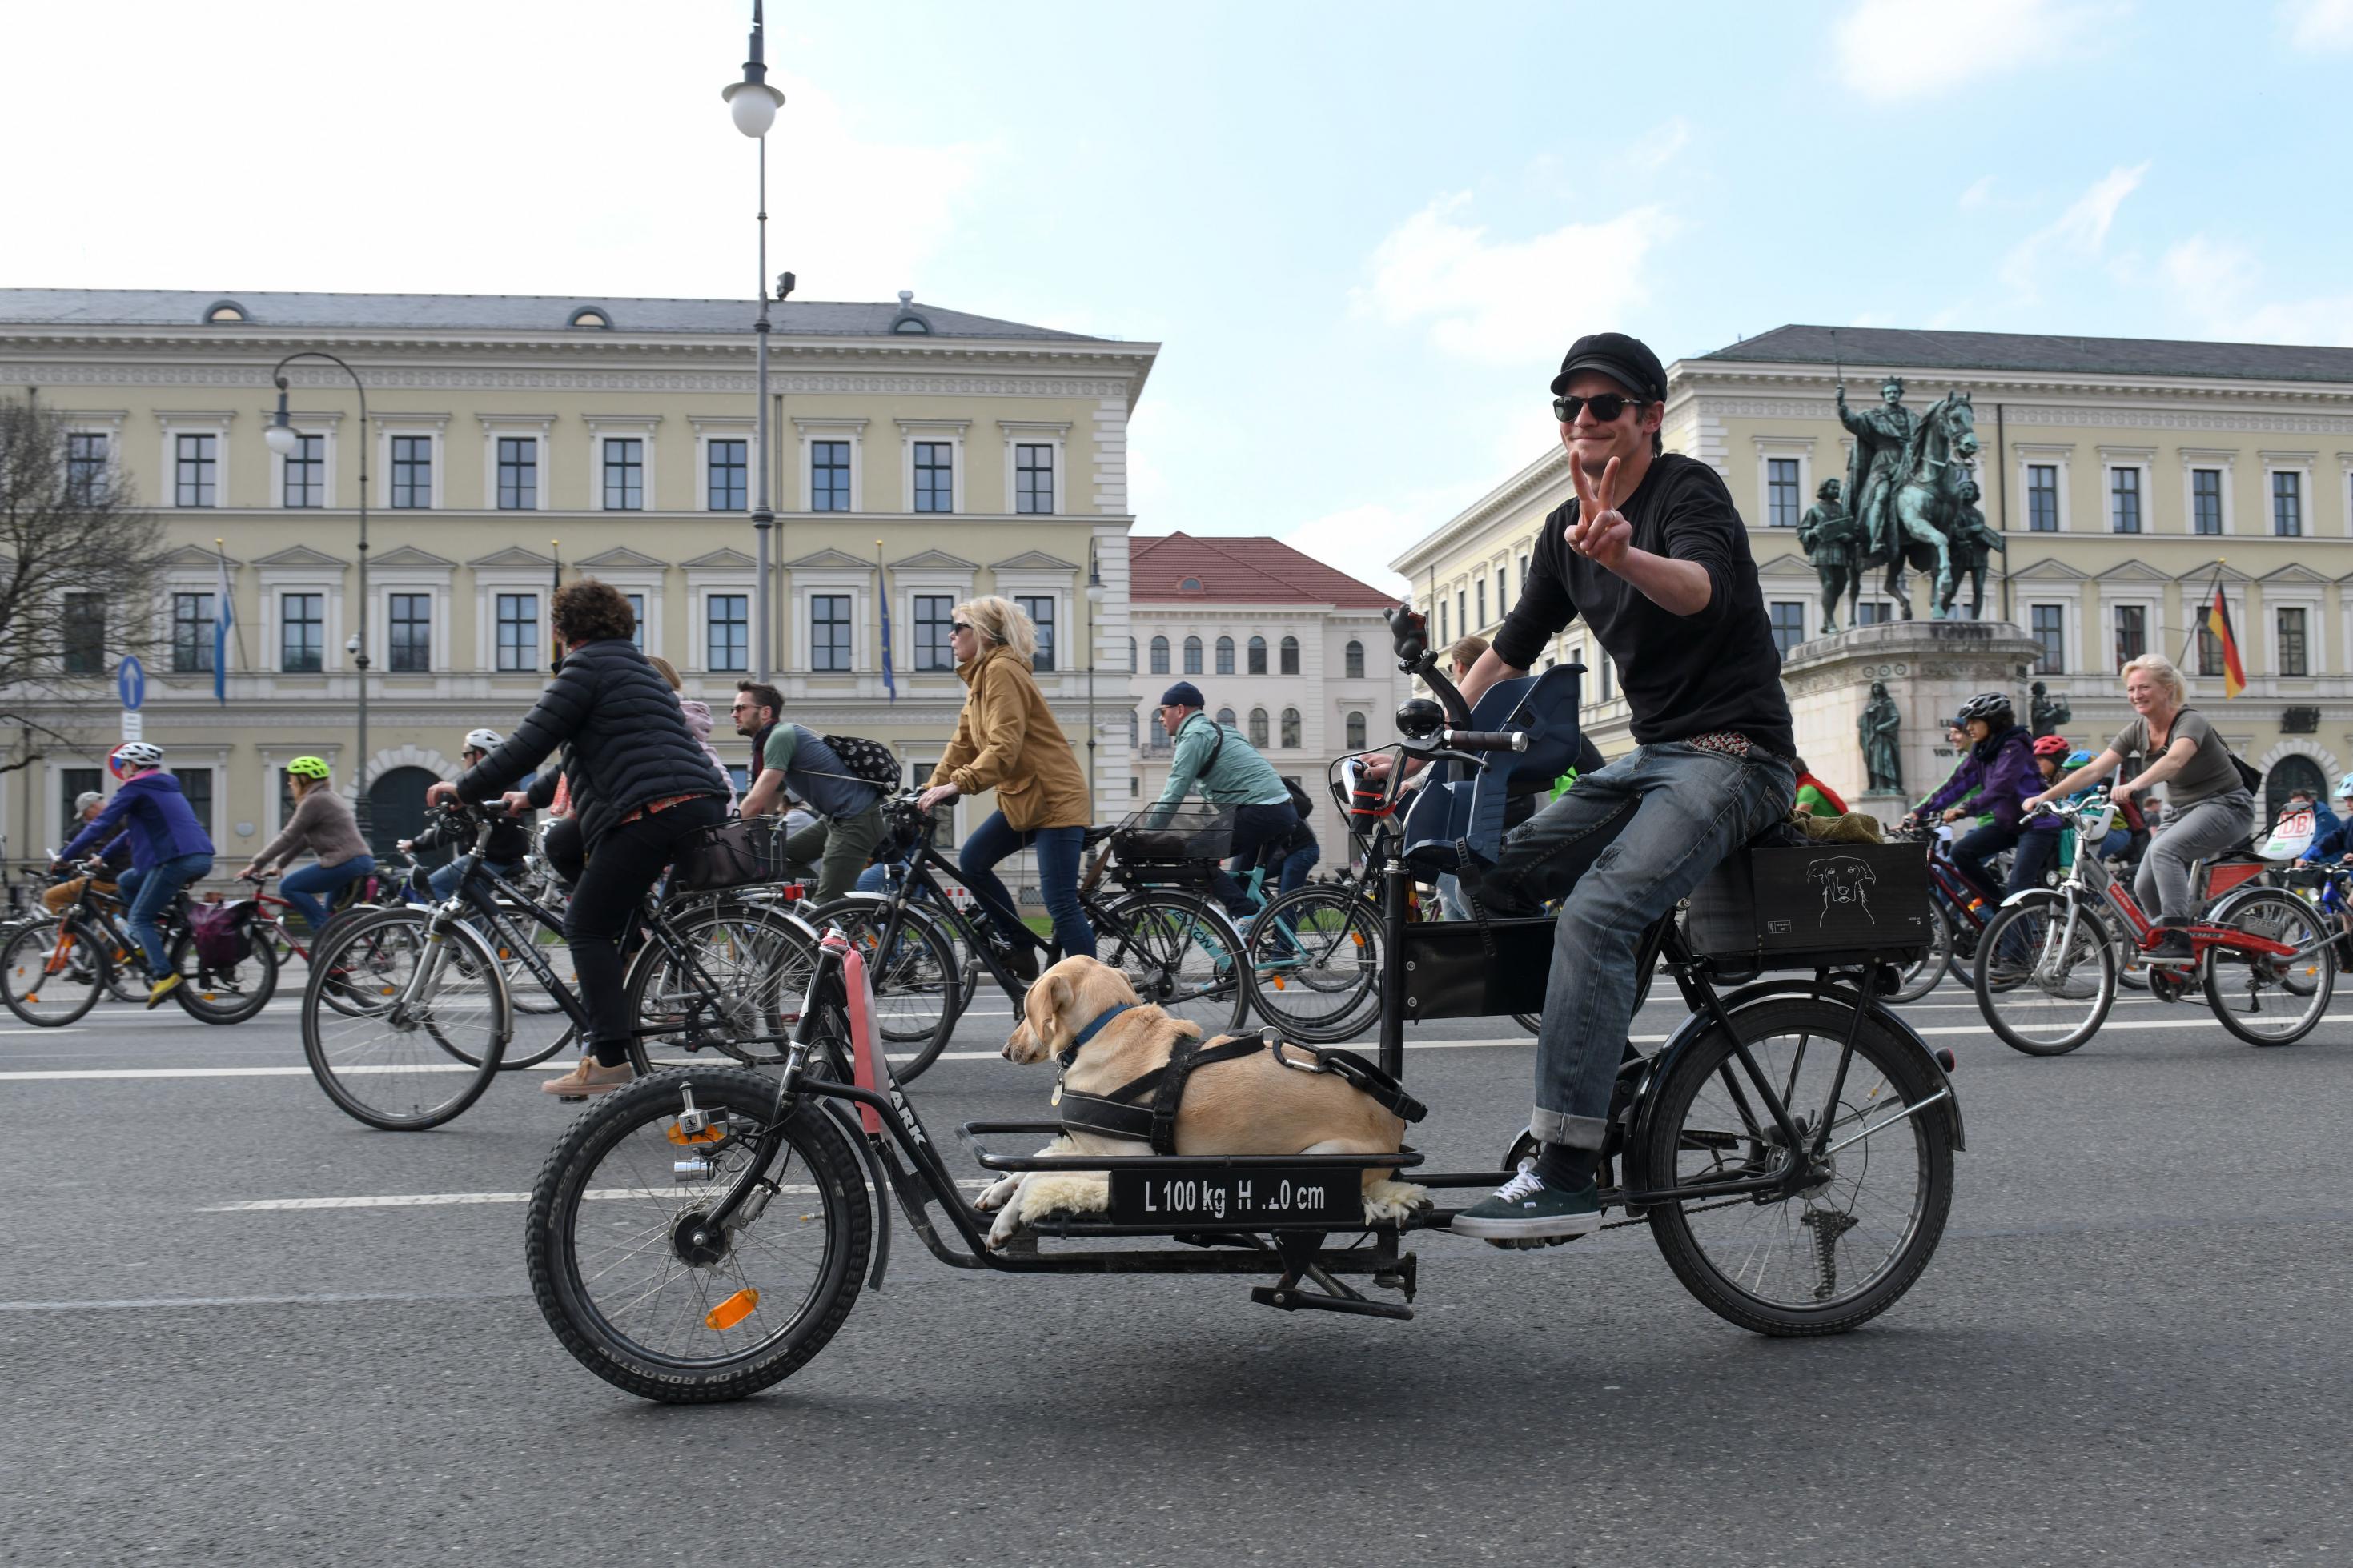 Das Bild zeigt einen Teilnehmer der Radsternfahrt im April 2019 in München. Auf seinem Lastenrad liegt ein Hund.